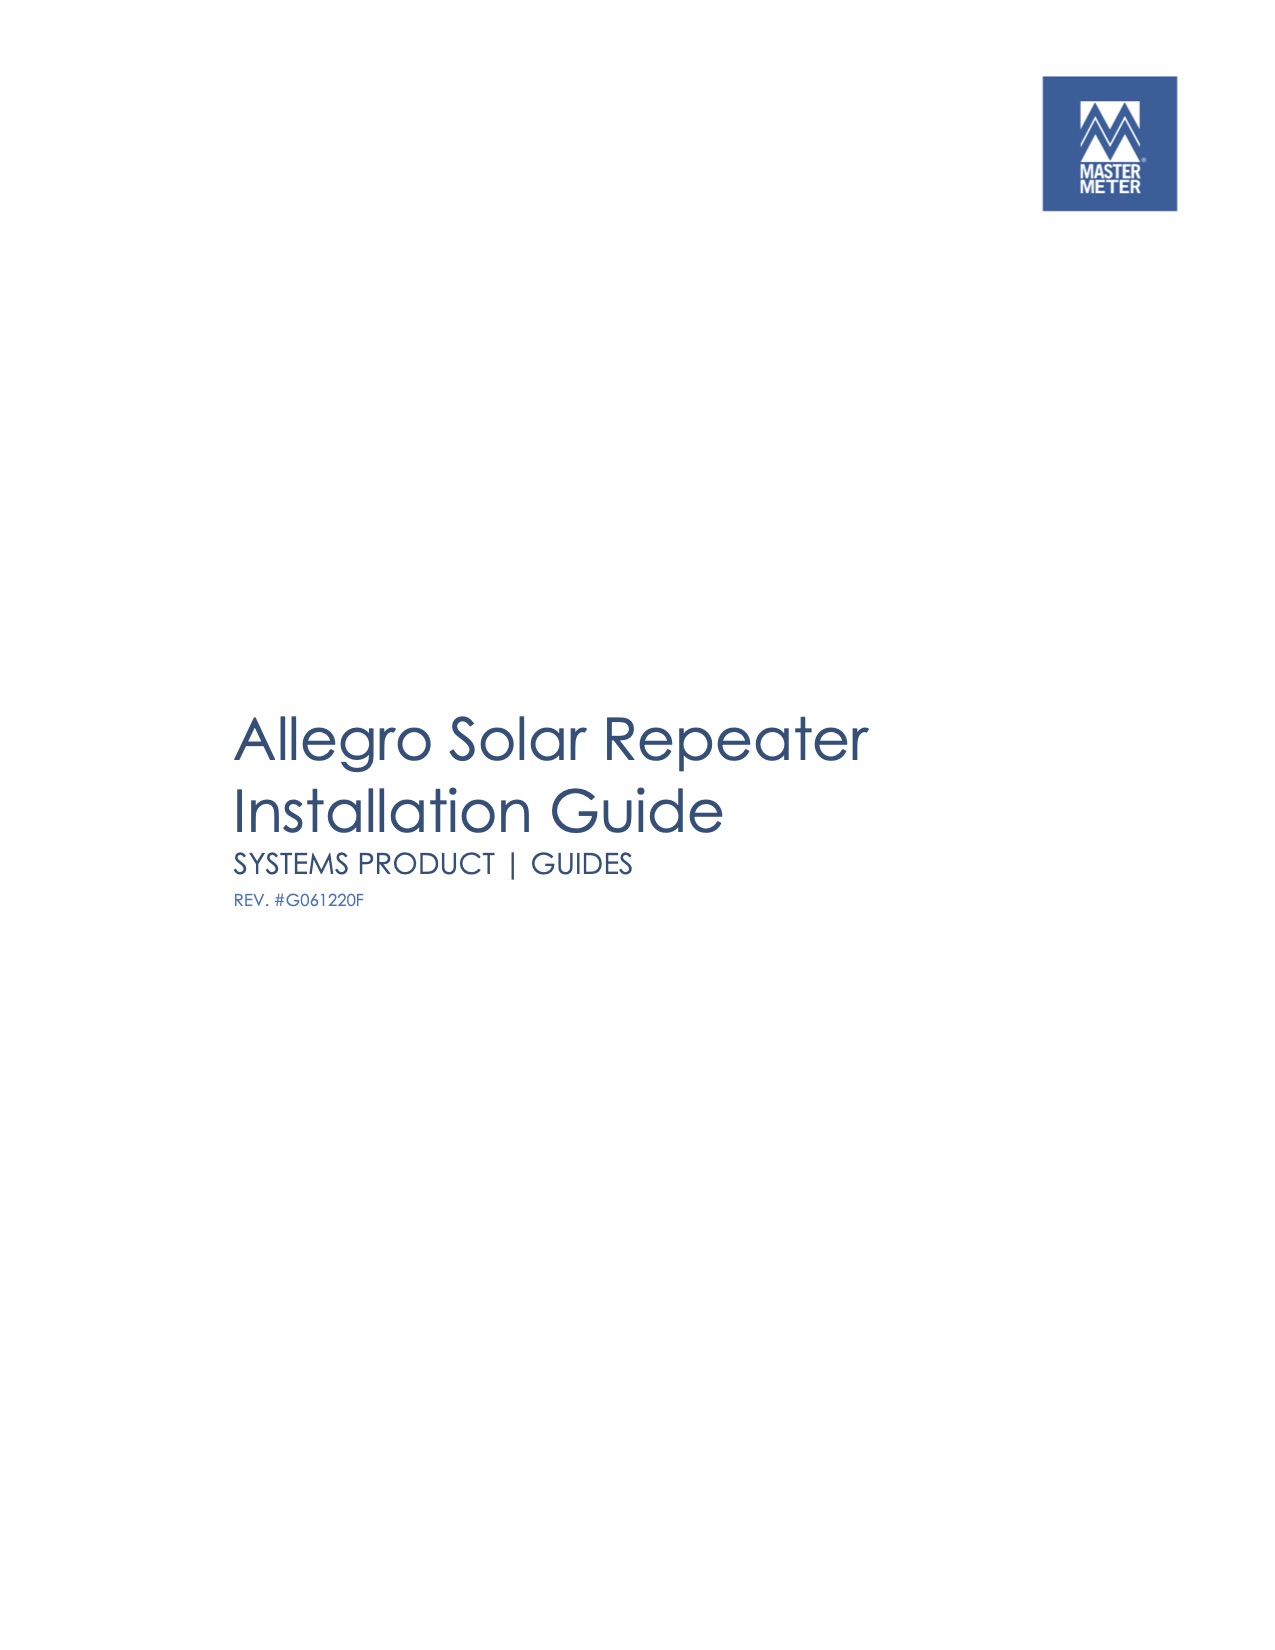 Allegro Solar Repeater Installation Guide